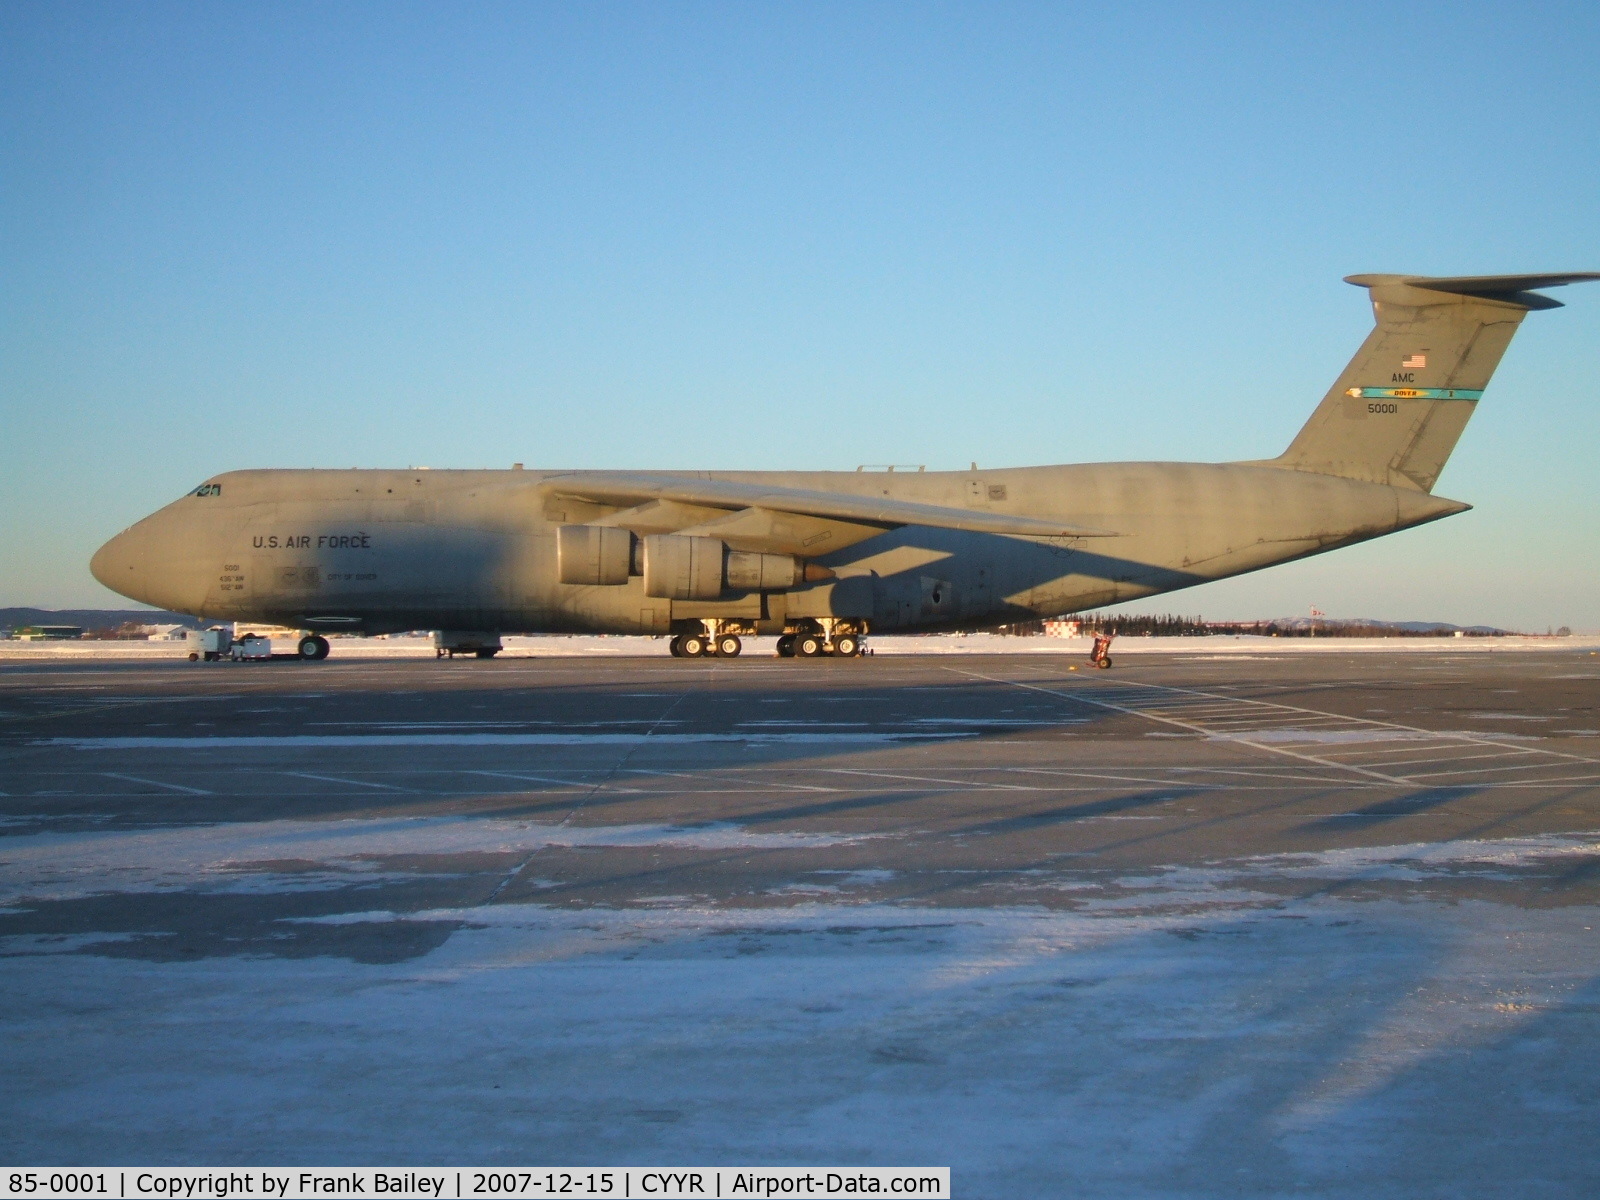 85-0001, 1985 Lockheed C-5B Galaxy C/N 500-0087, USAF Military C-5